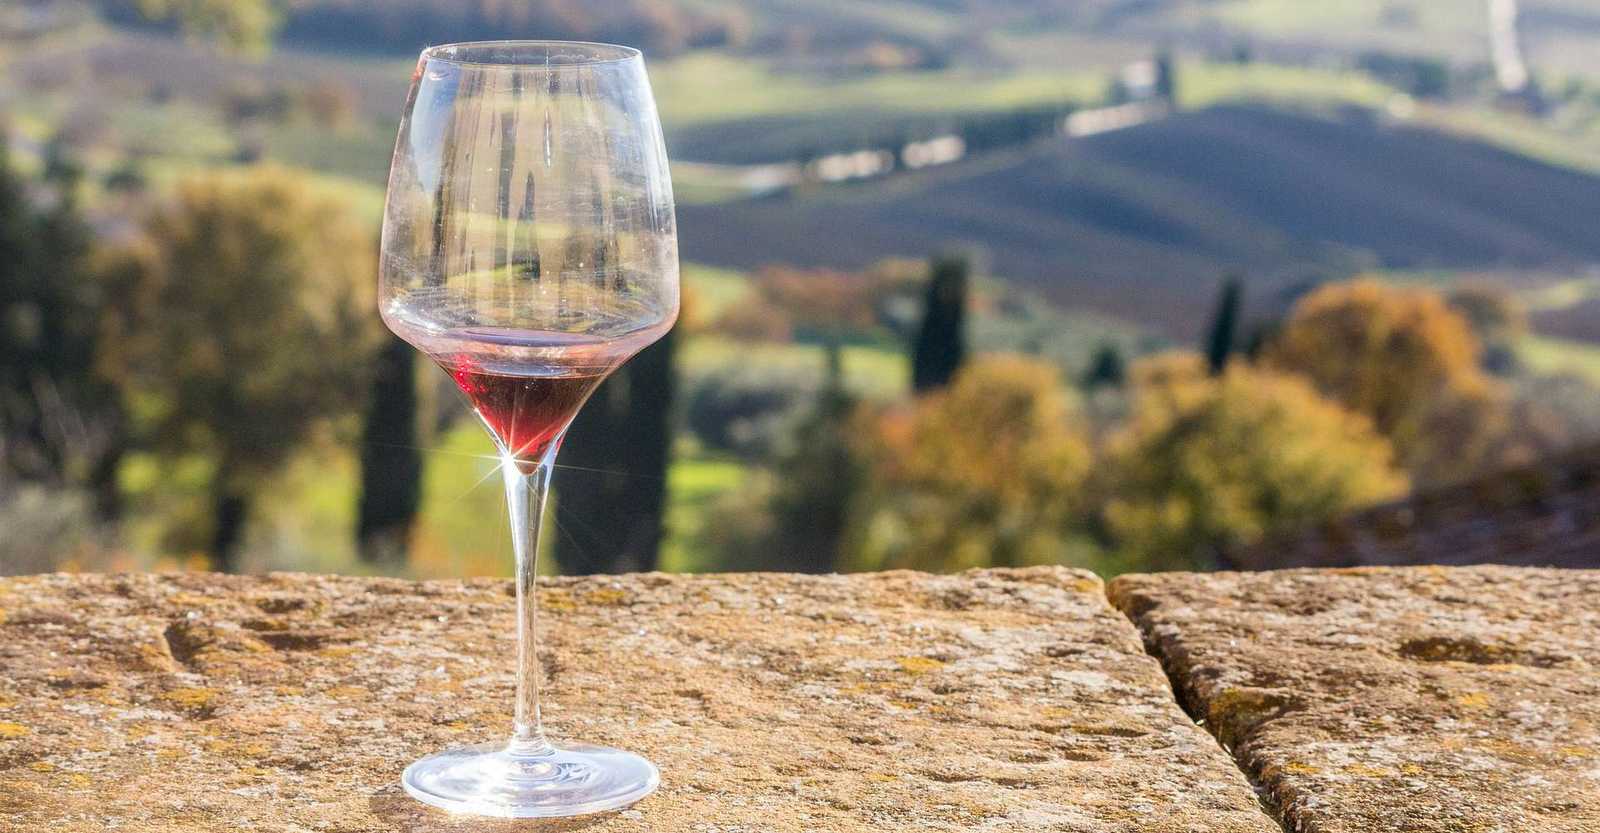 tuscany-wine landscape